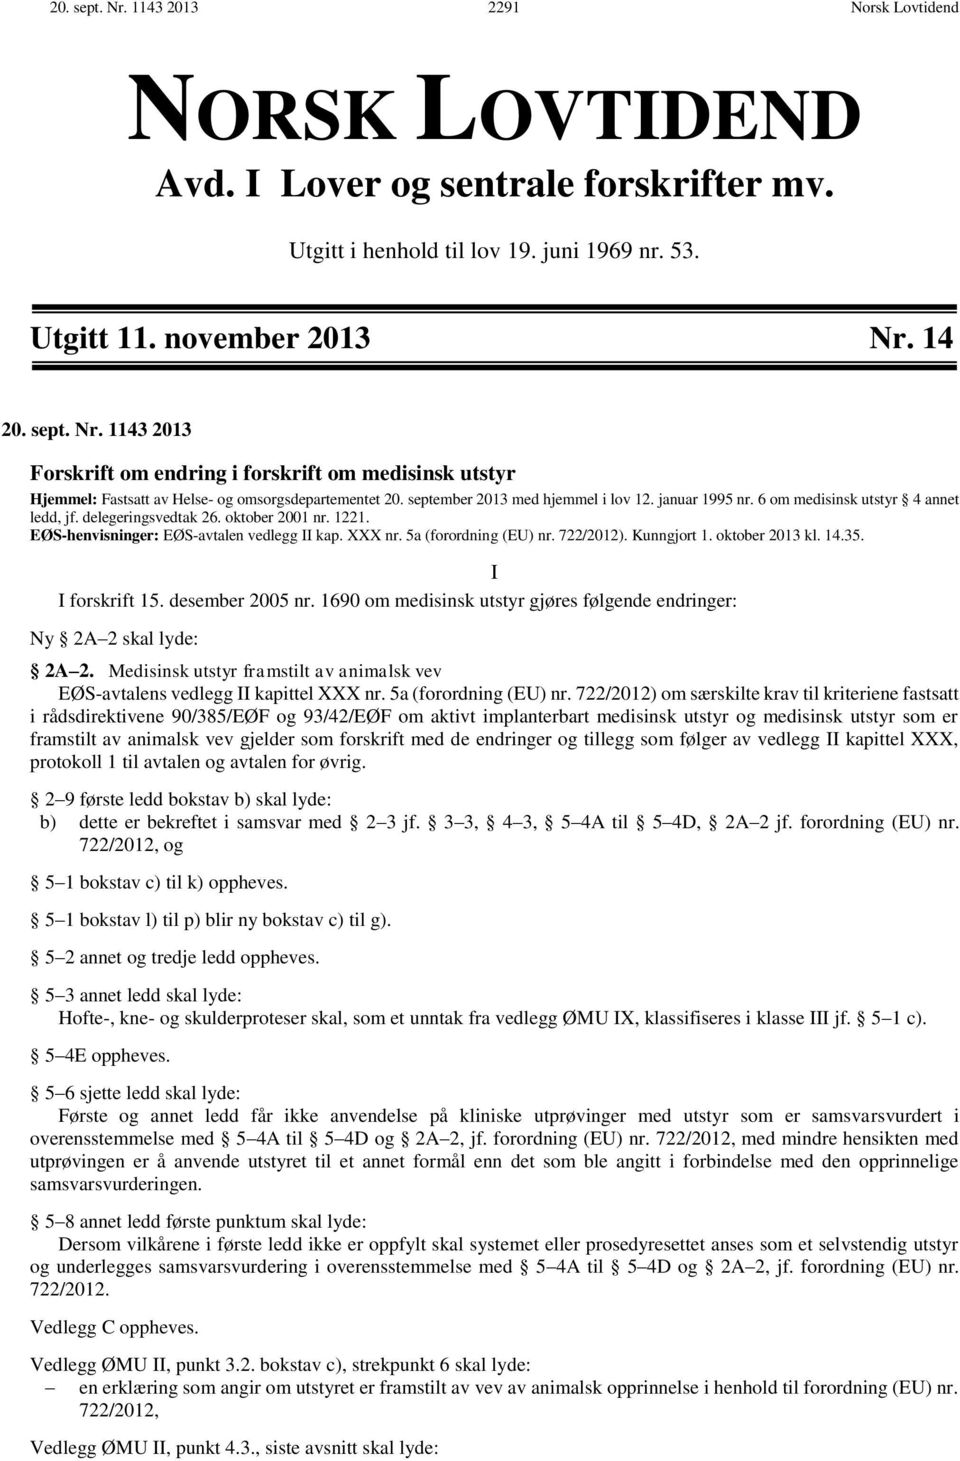 5a (forordning (EU) nr. 722/2012). Kunngjort 1. oktober 2013 kl. 14.35. I I forskrift 15. desember 2005 nr. 1690 om medisinsk utstyr gjøres følgende endringer: Ny 2A 2 skal lyde: 2A 2.